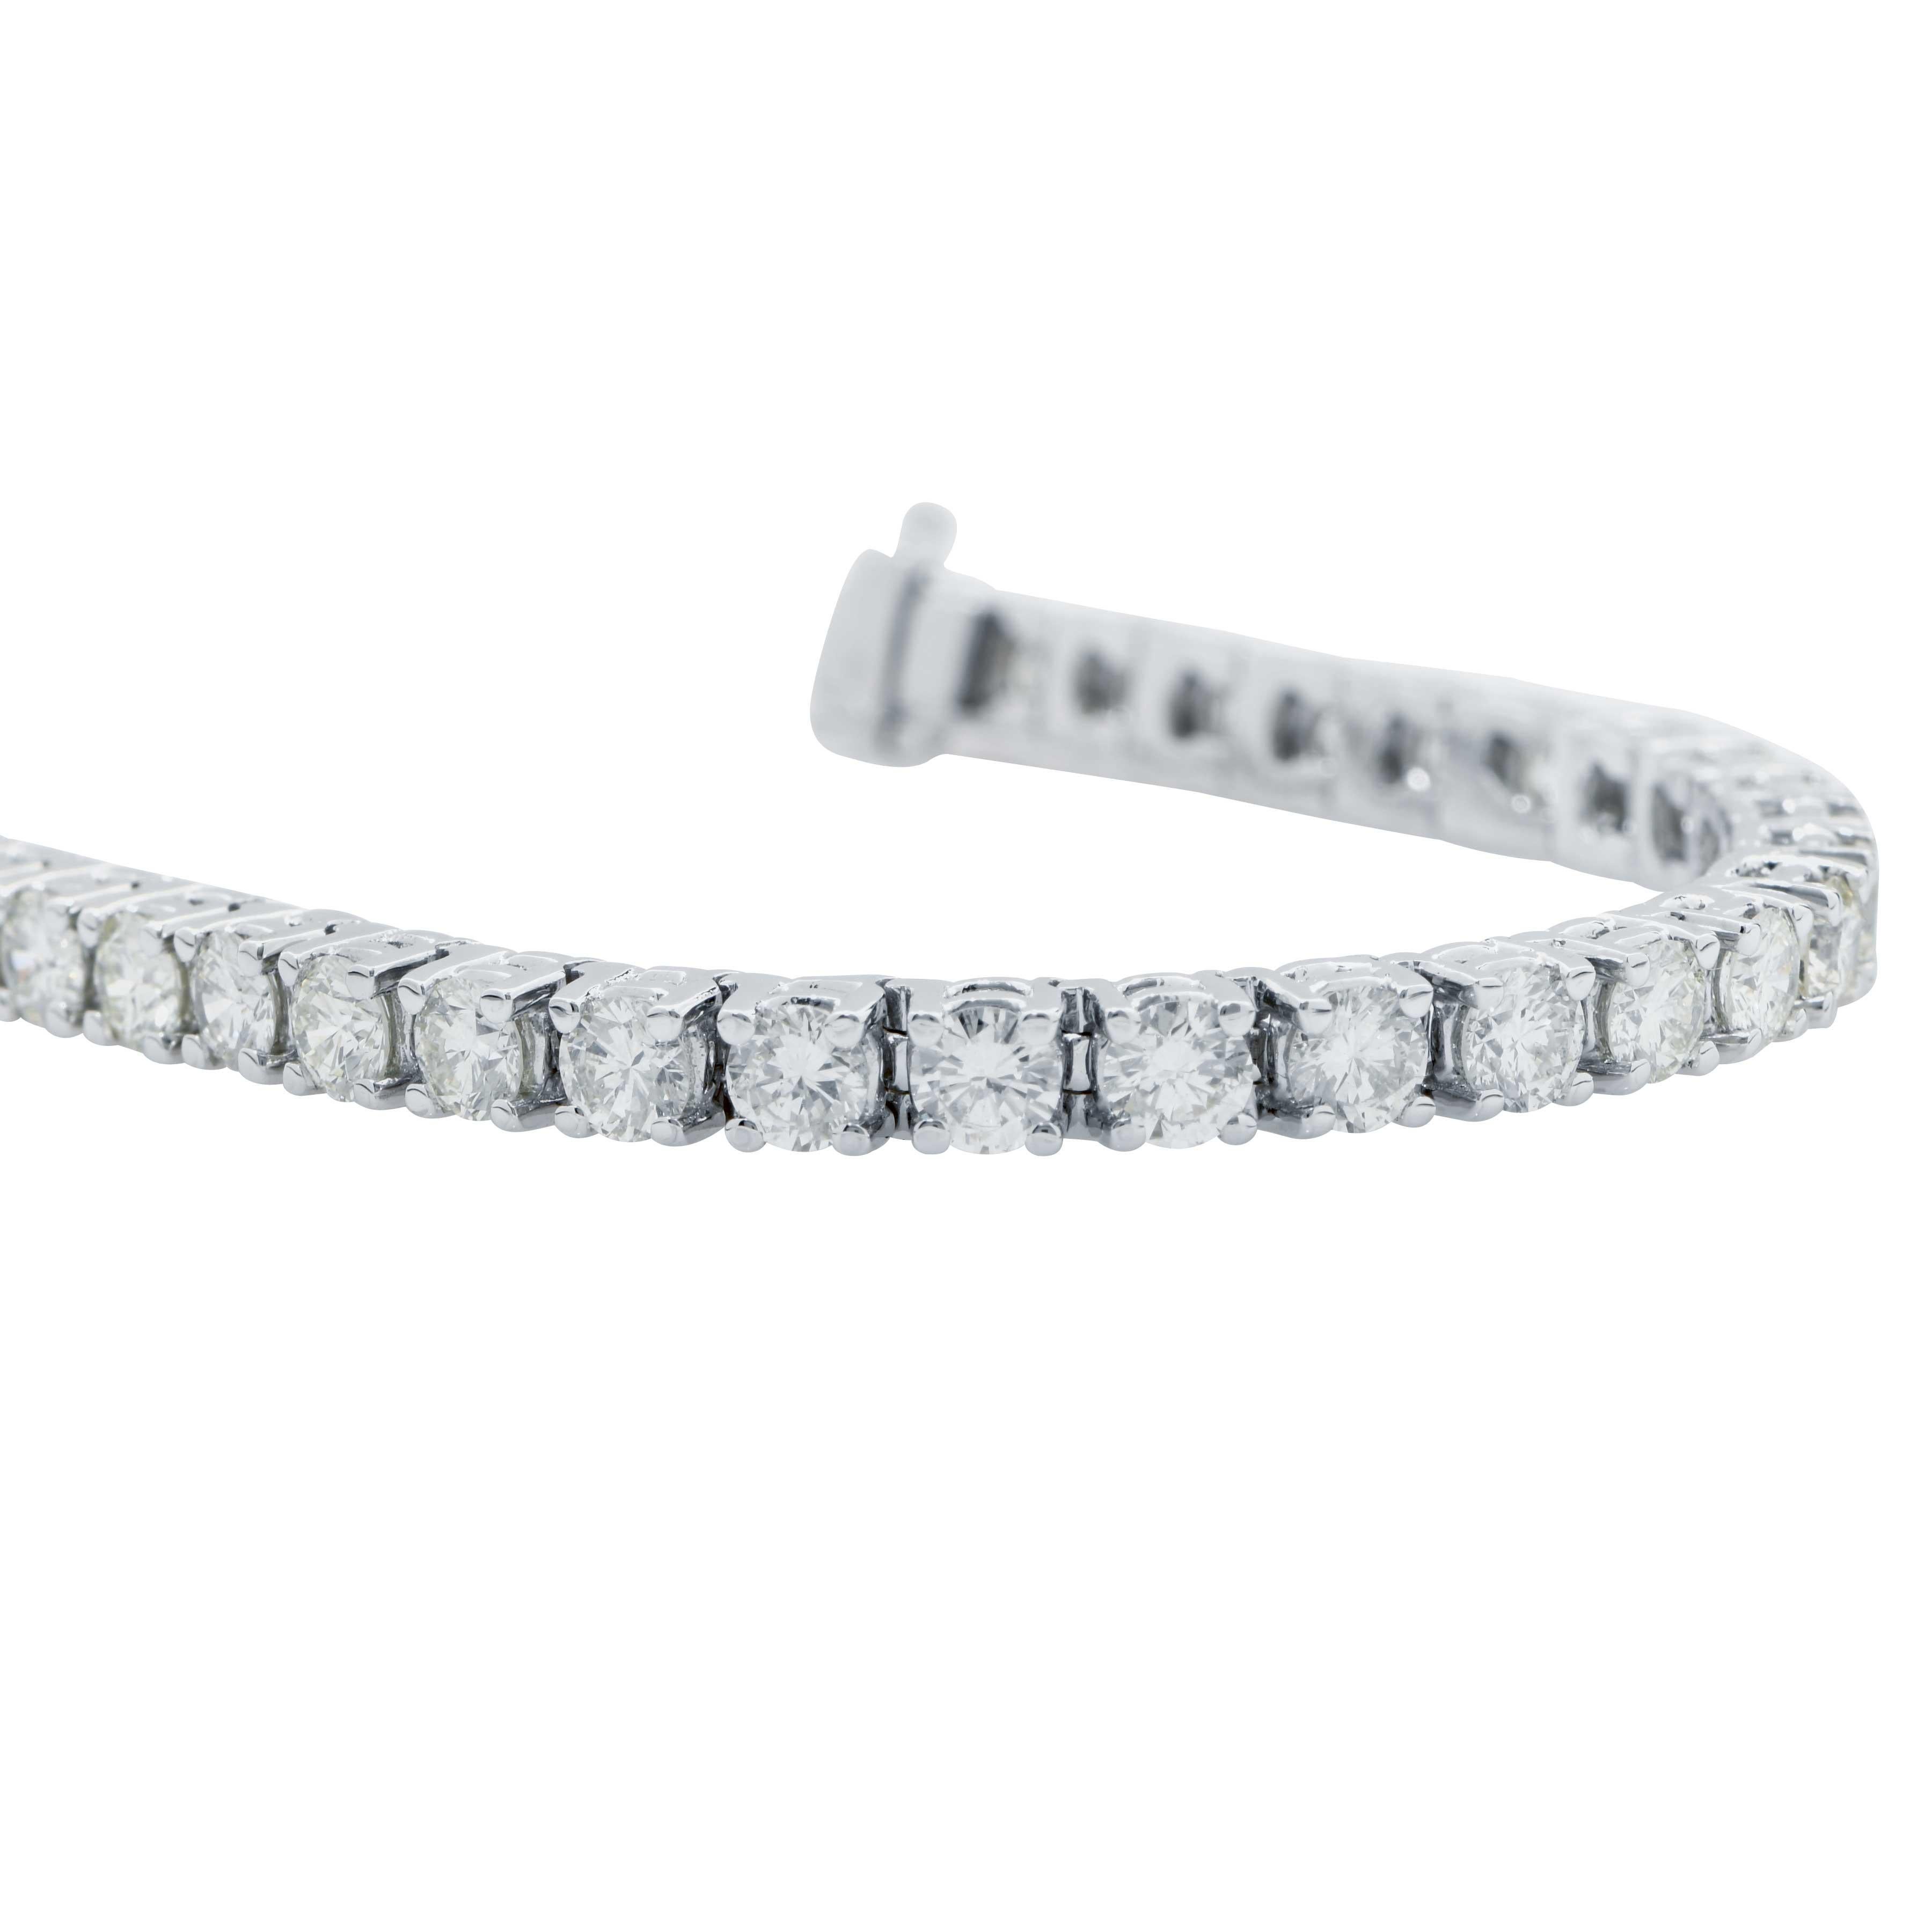 Dieses wunderschöne Diamant-Tennisarmband besteht aus 38 runden Diamanten im Brillantschliff mit einer durchschnittlichen Farbe von I und einer Reinheit von Vs2. Die Diamanten sind fachmännisch mit vier Zacken in ein Armband aus 18 Karat Weißgold